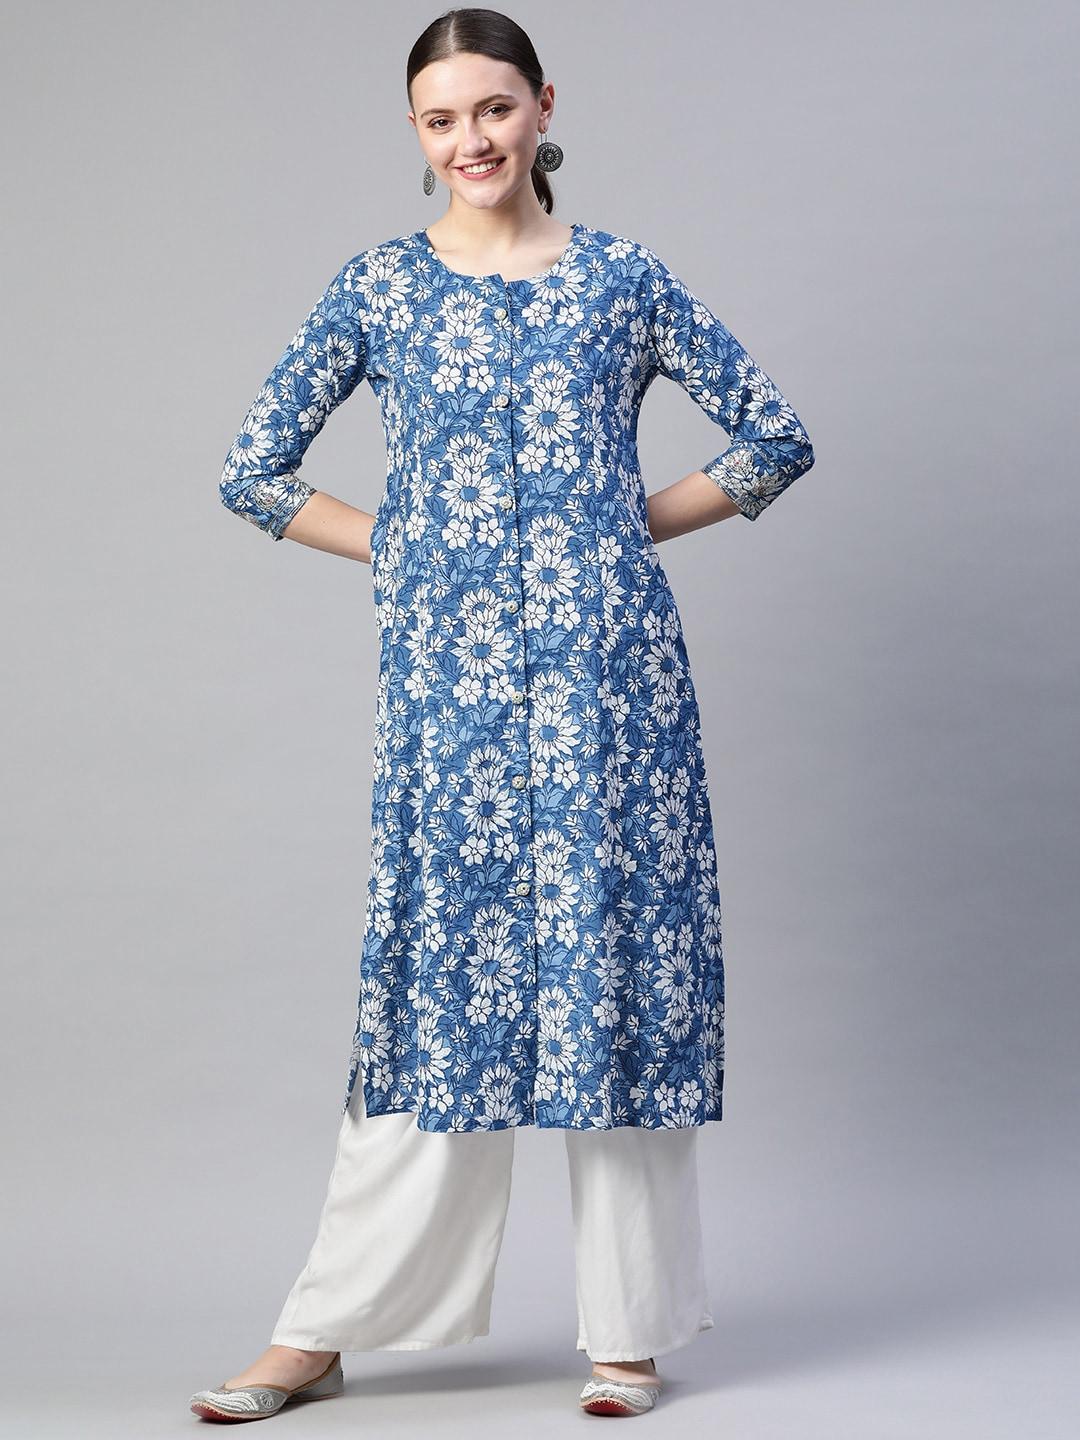 readiprint fashions women blue & white cotton floral batik print kurta